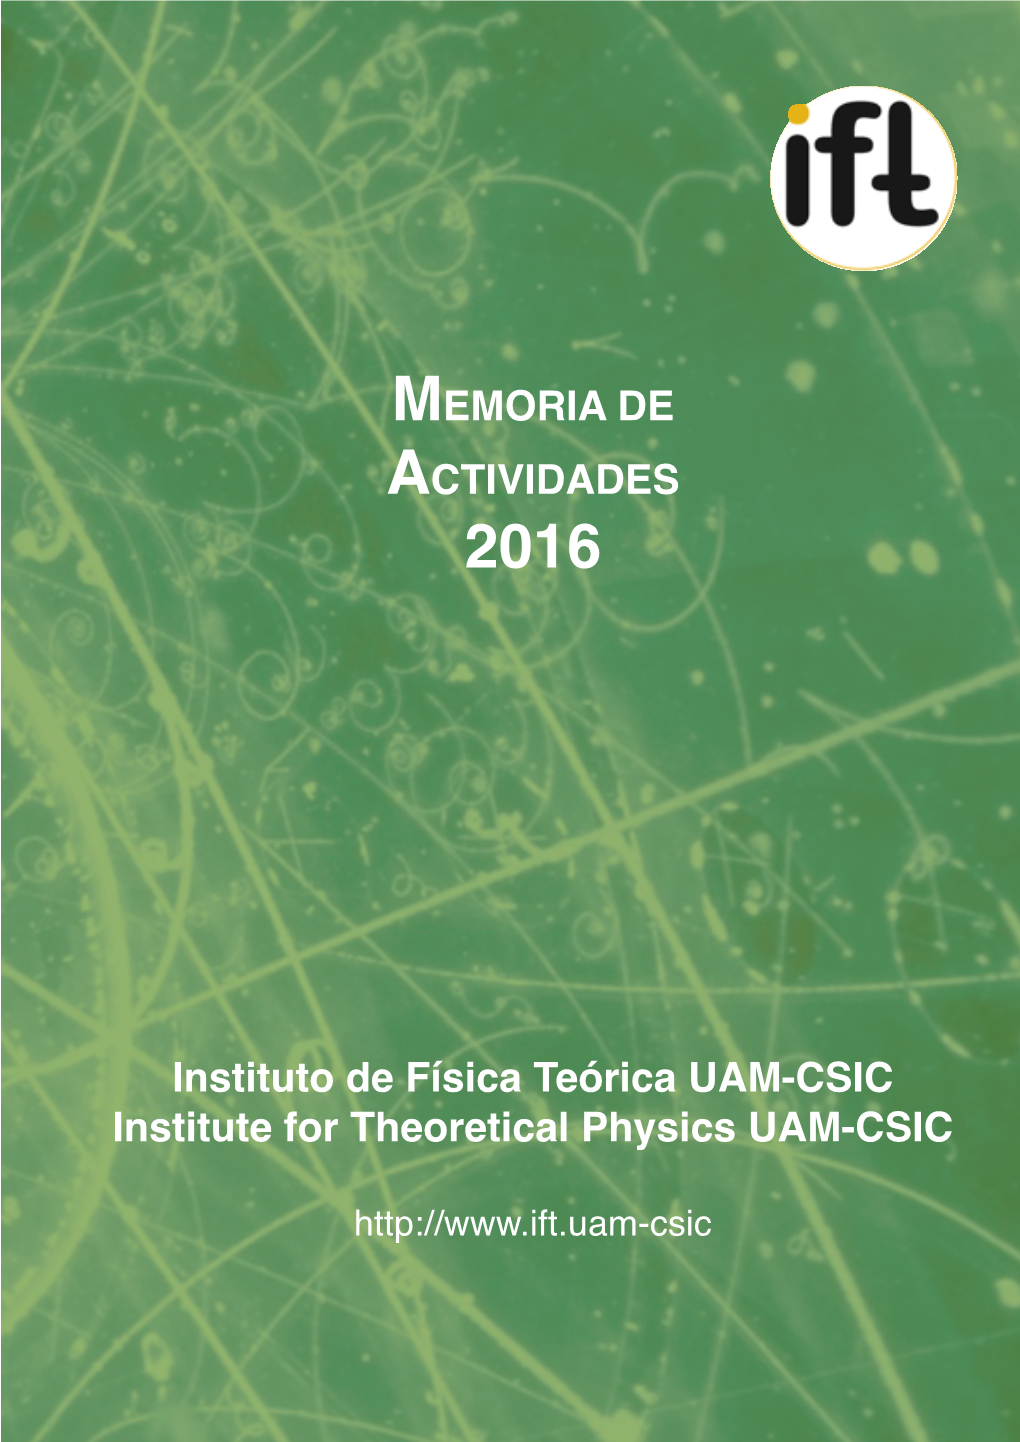 MEMORIA DE ACTIVIDADES Instituto De Física Teórica UAM-CSIC